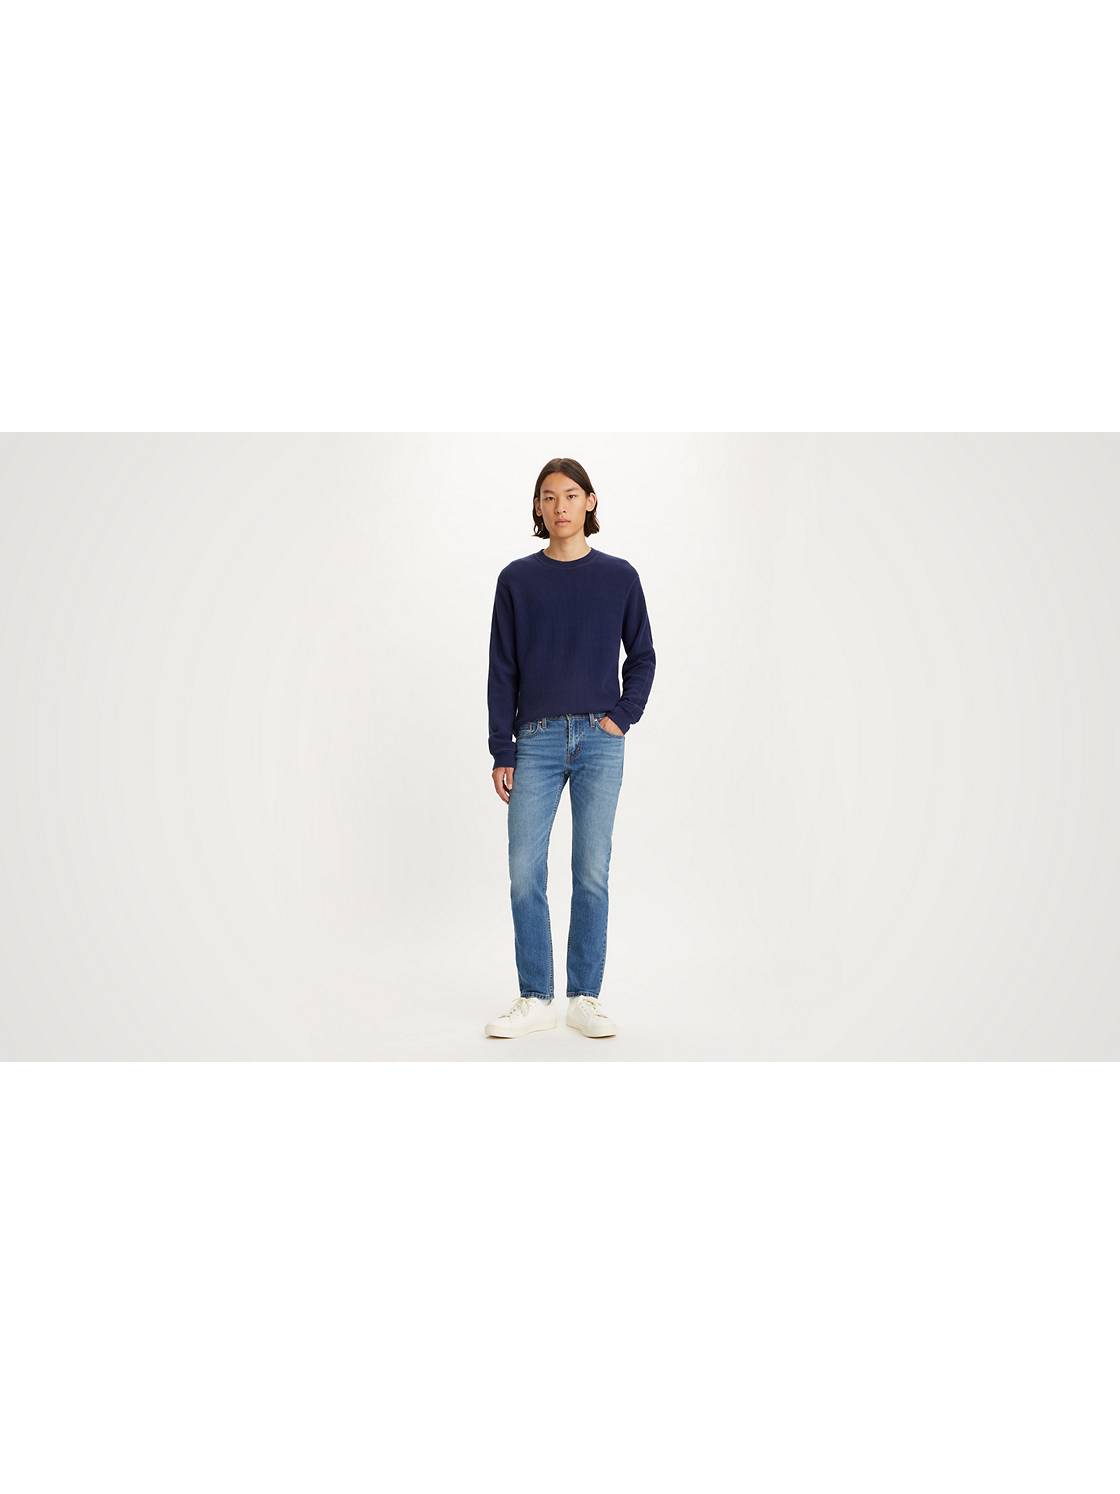 Jeans hommes - Magasinez jeans pour homme